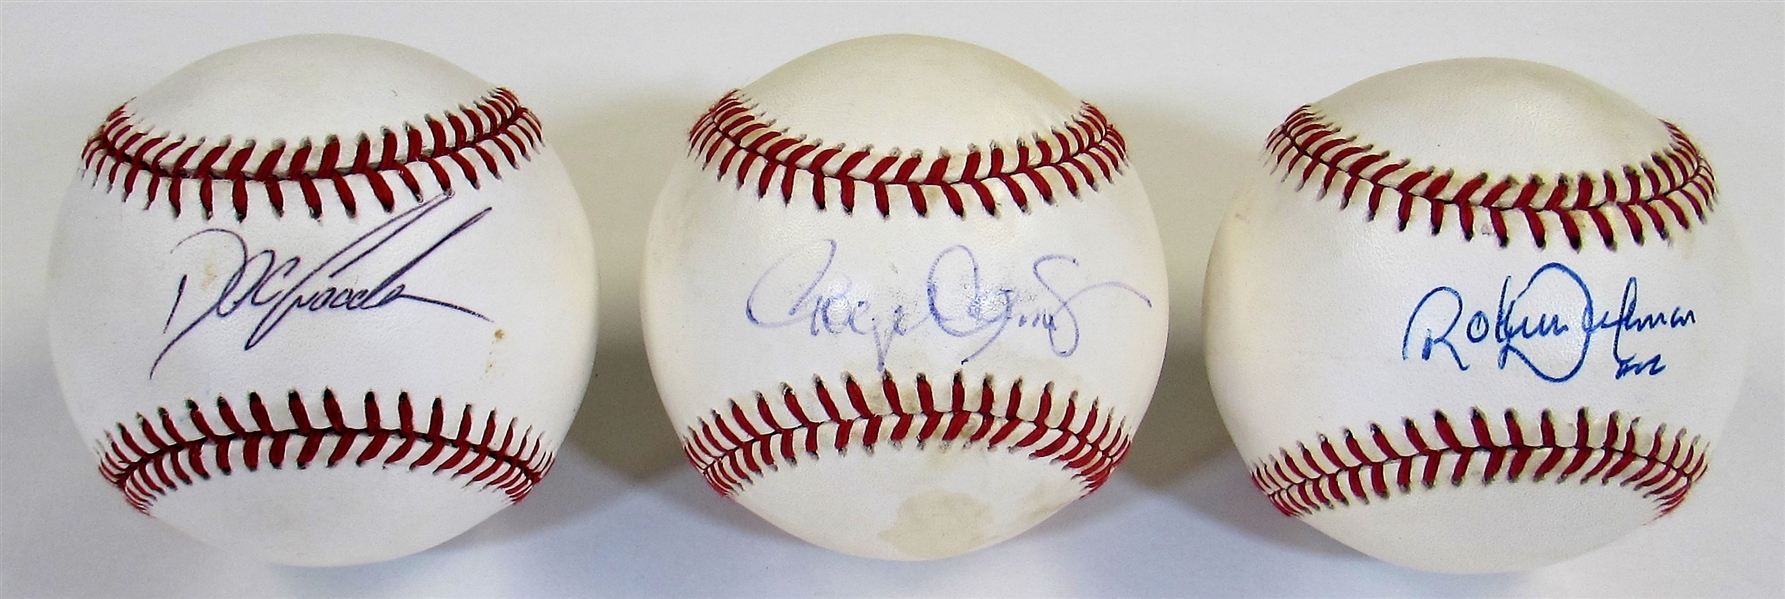 Doc Gooden - Randy Johnson - Roger Clemens Signed Baseballs 